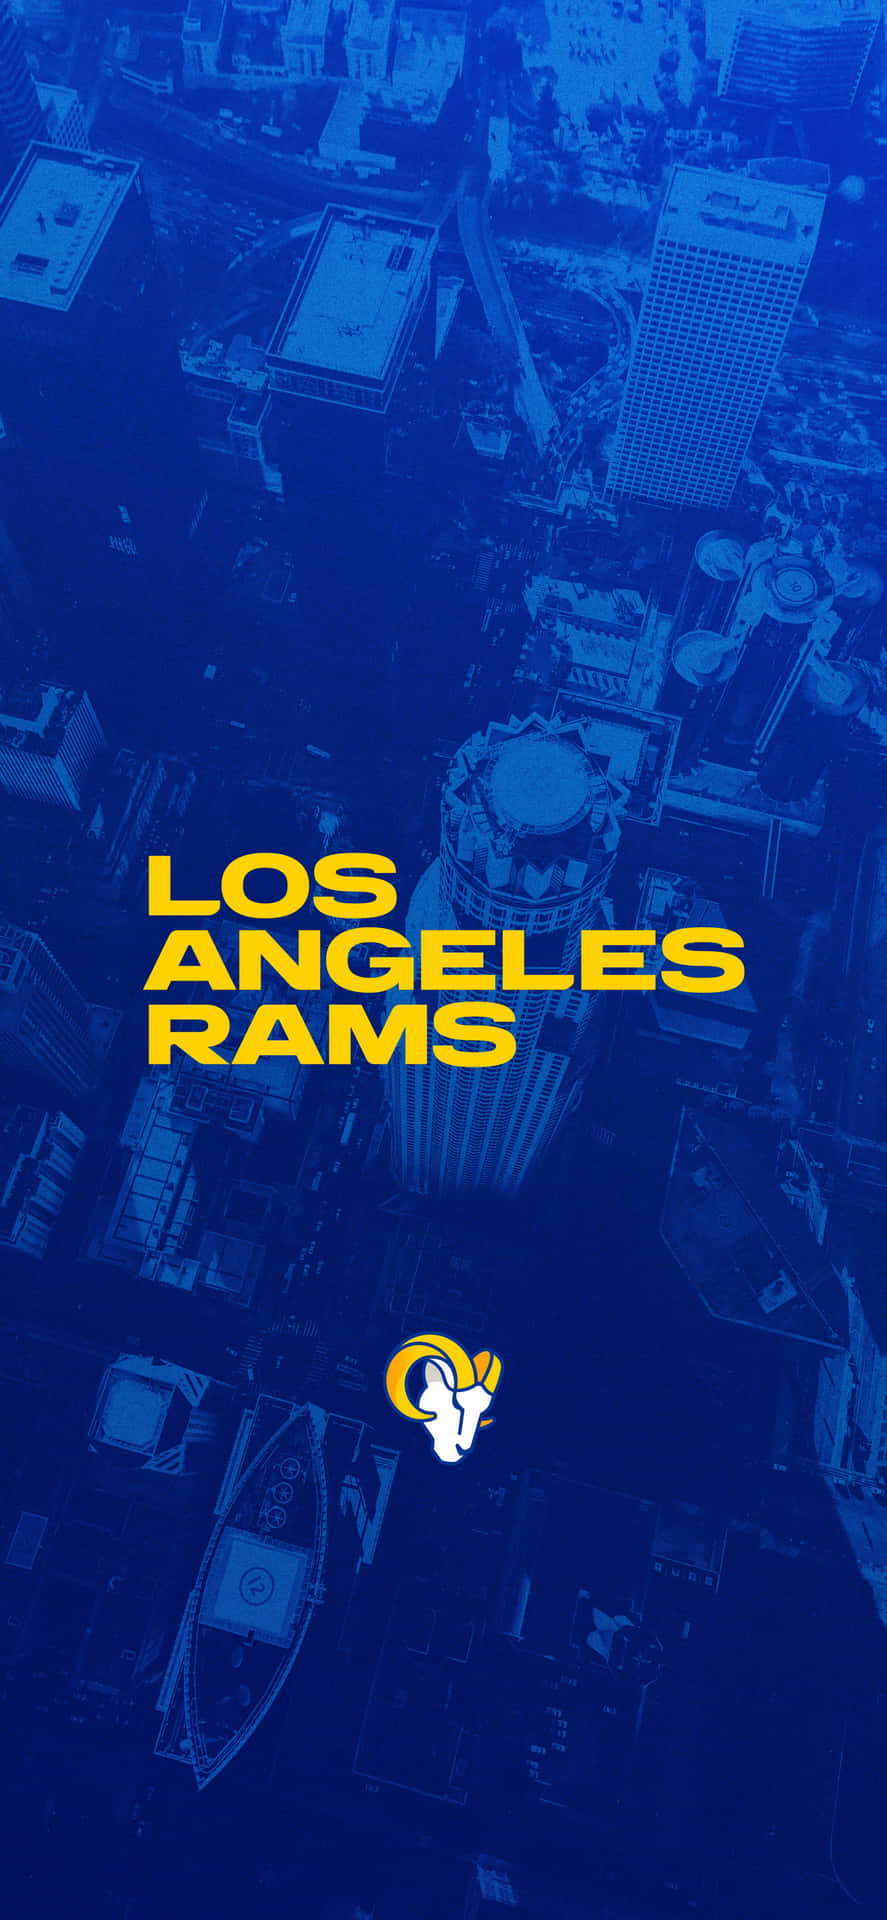 Einblauer Und Gelber Hintergrund Mit Den Worten Los Angeles Rams. Wallpaper